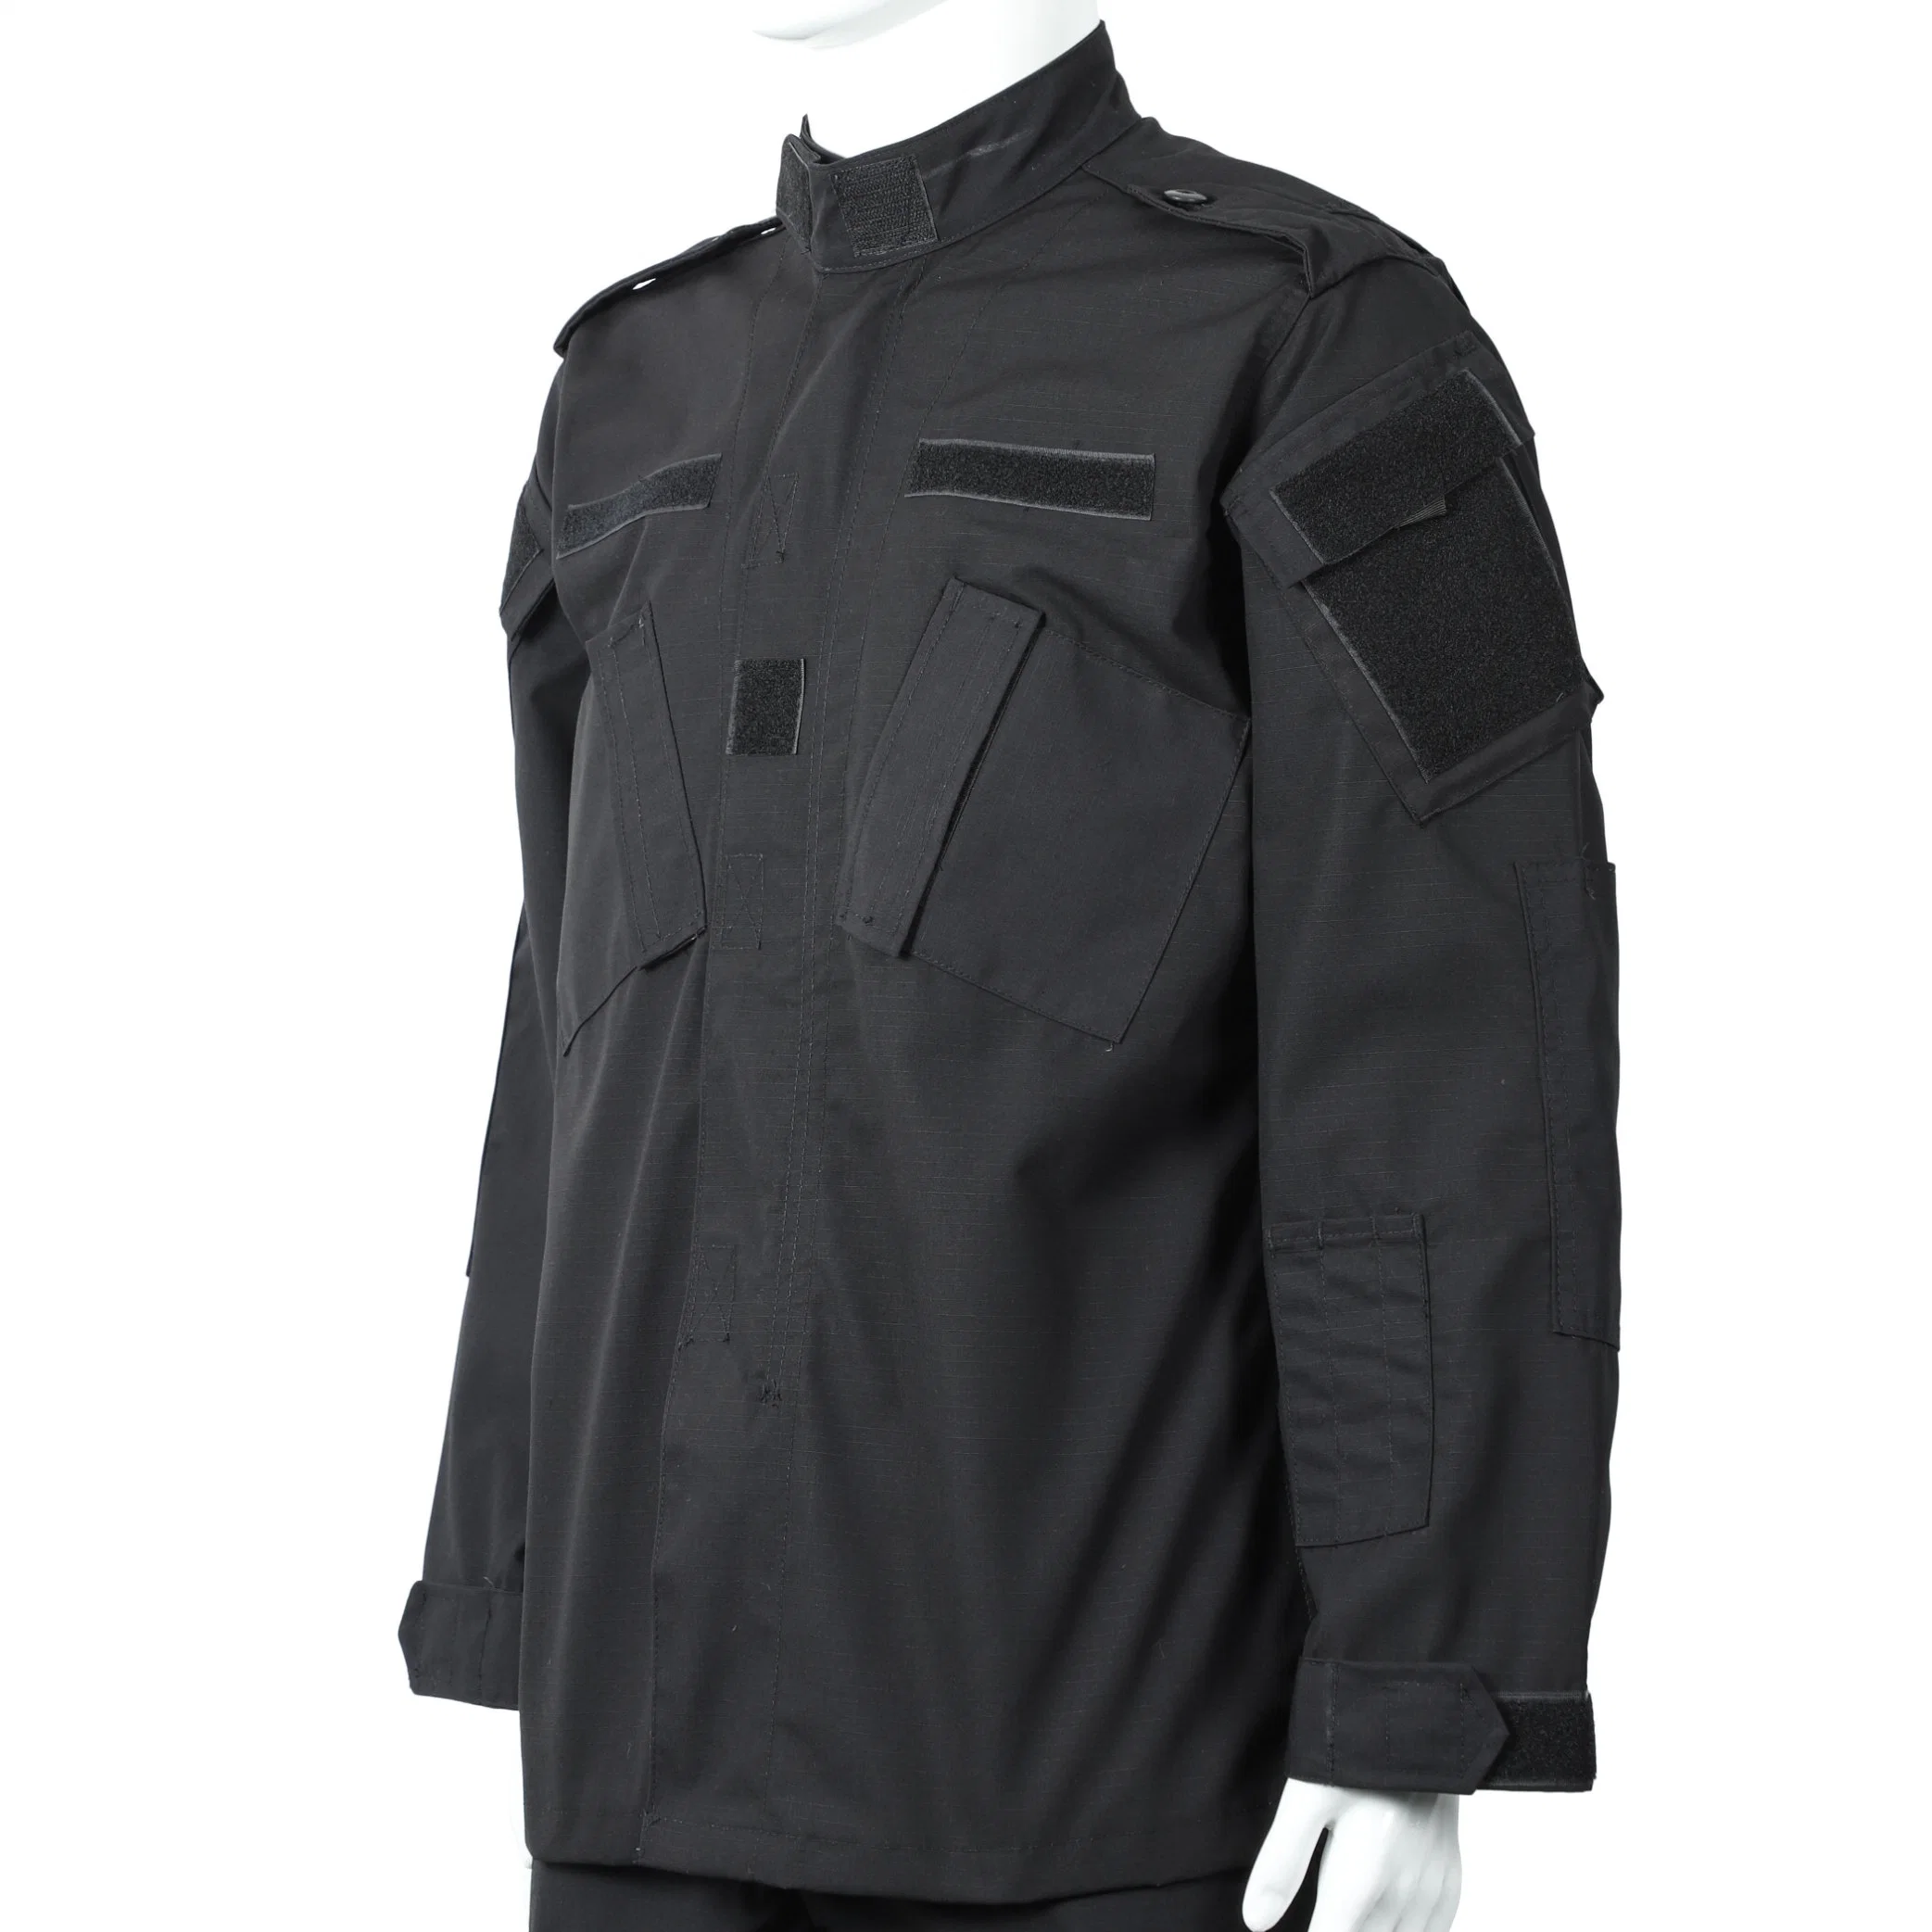 Uniforme Del Ejercito De Combate Military Uniform Acu Ripstop Clothes Combat Uniform